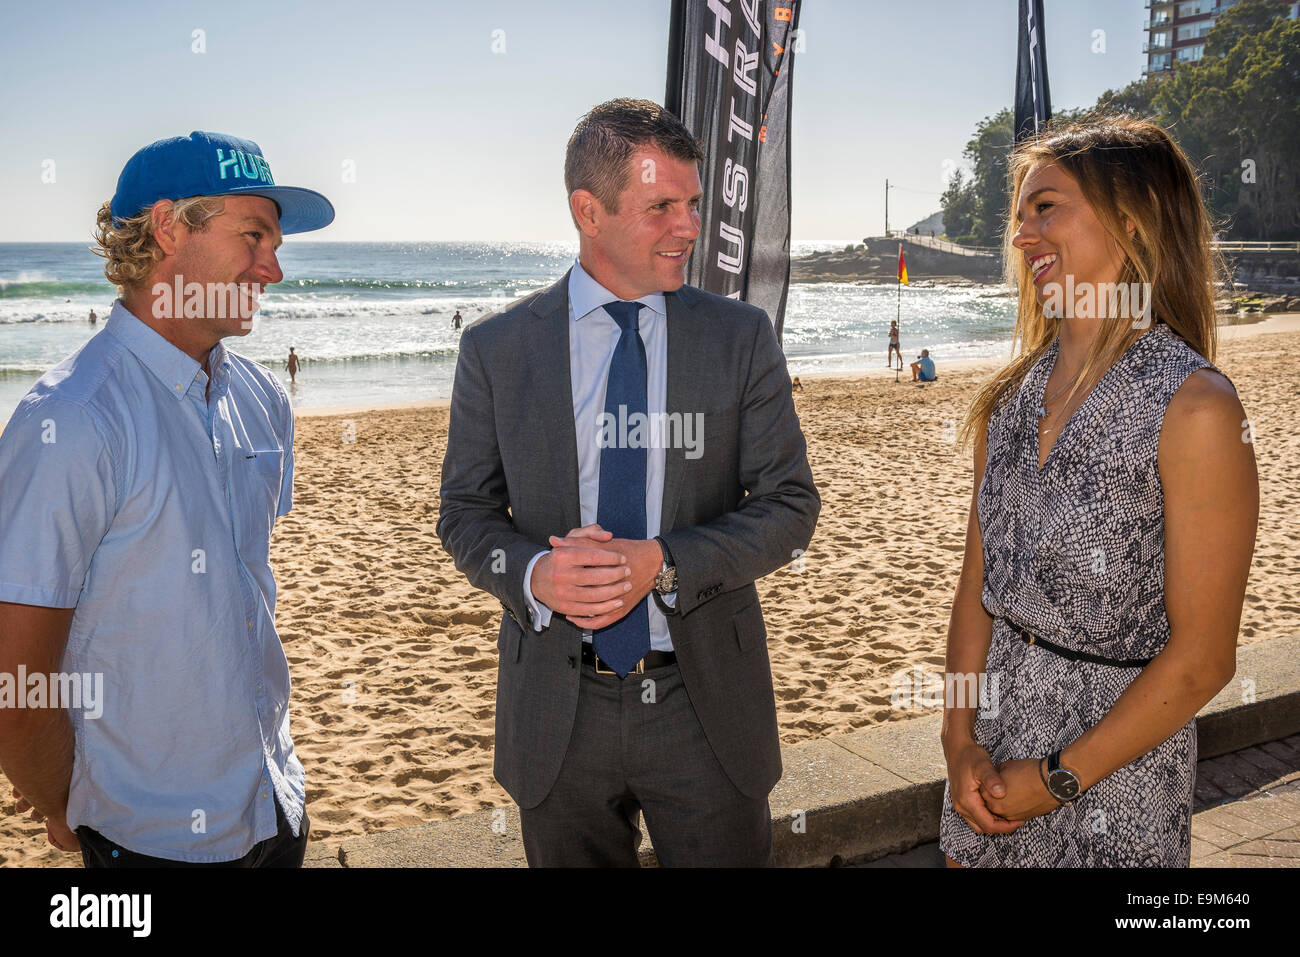 Sydney, Australia. Il 30 ottobre, 2014. NSW Premier Mike Baird (C) chat per gli atleti in competizione Adrian (ACE) Buchan (L) e Sally Fitzgibbons (R) per gli Australian Open di surf a Manly Beach a Sydney. Credito: MediaServicesAP/Alamy Live News Foto Stock